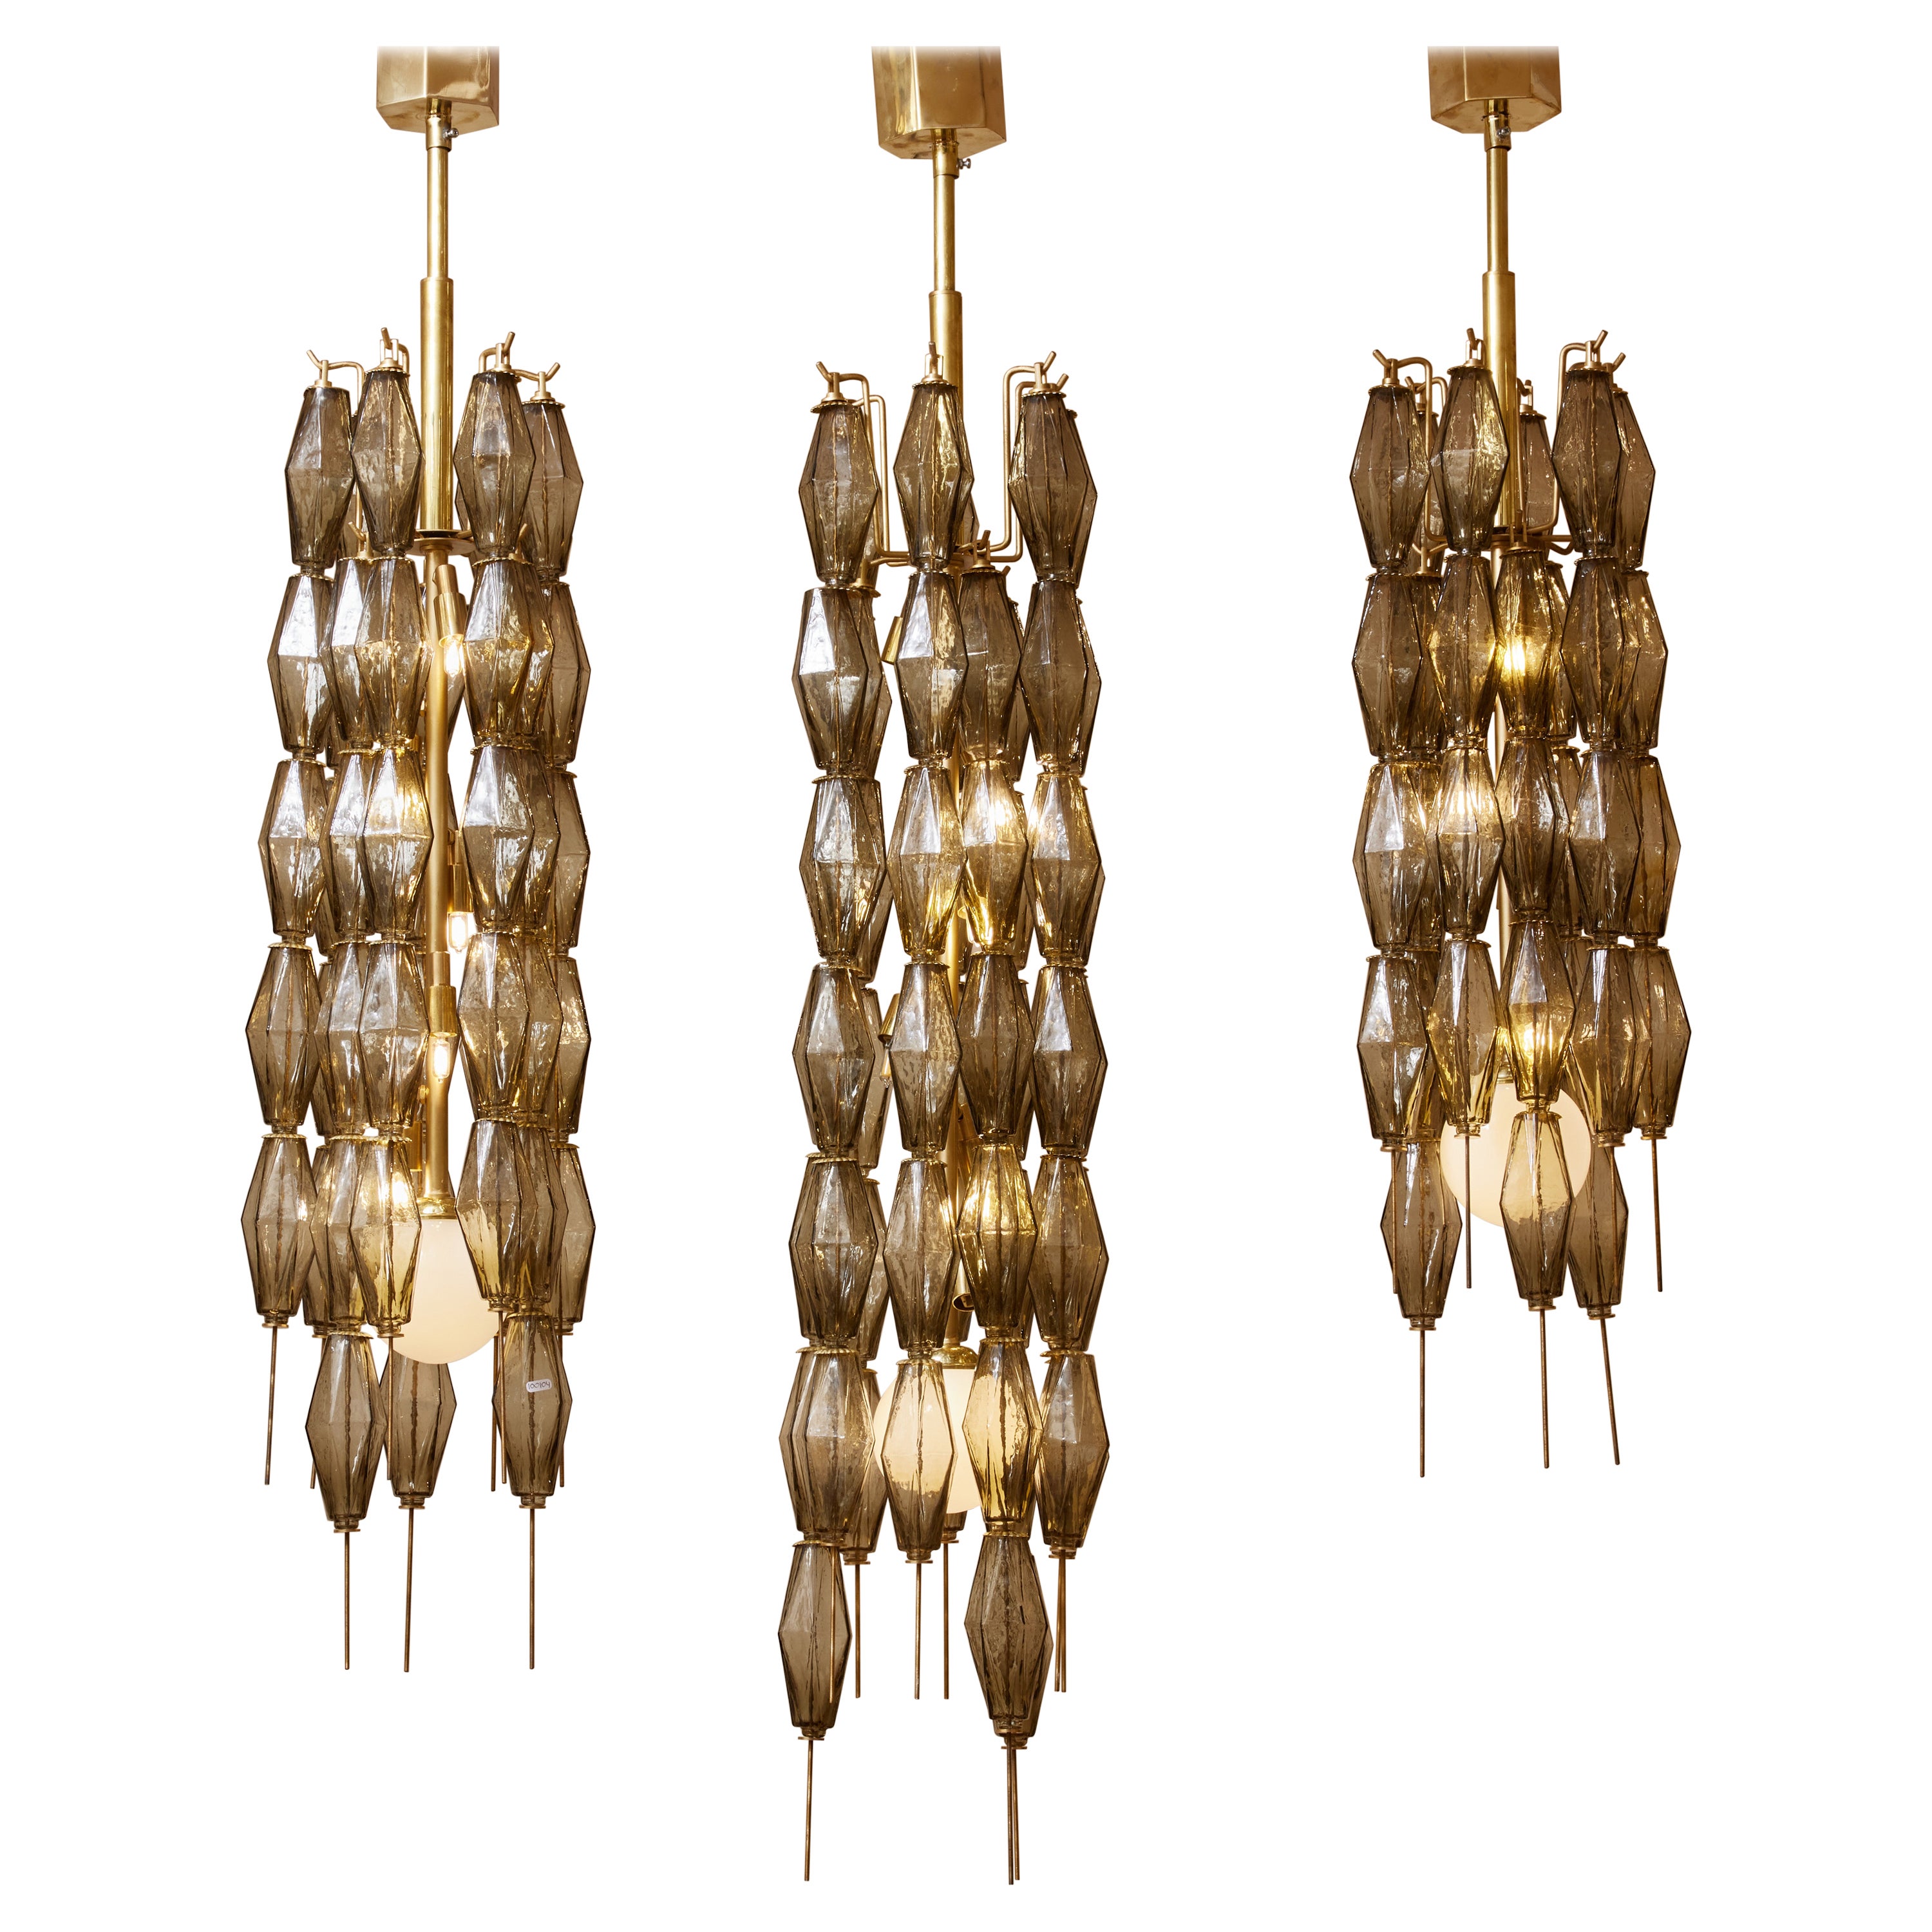 Poliedri chandelier by Studio Glustin